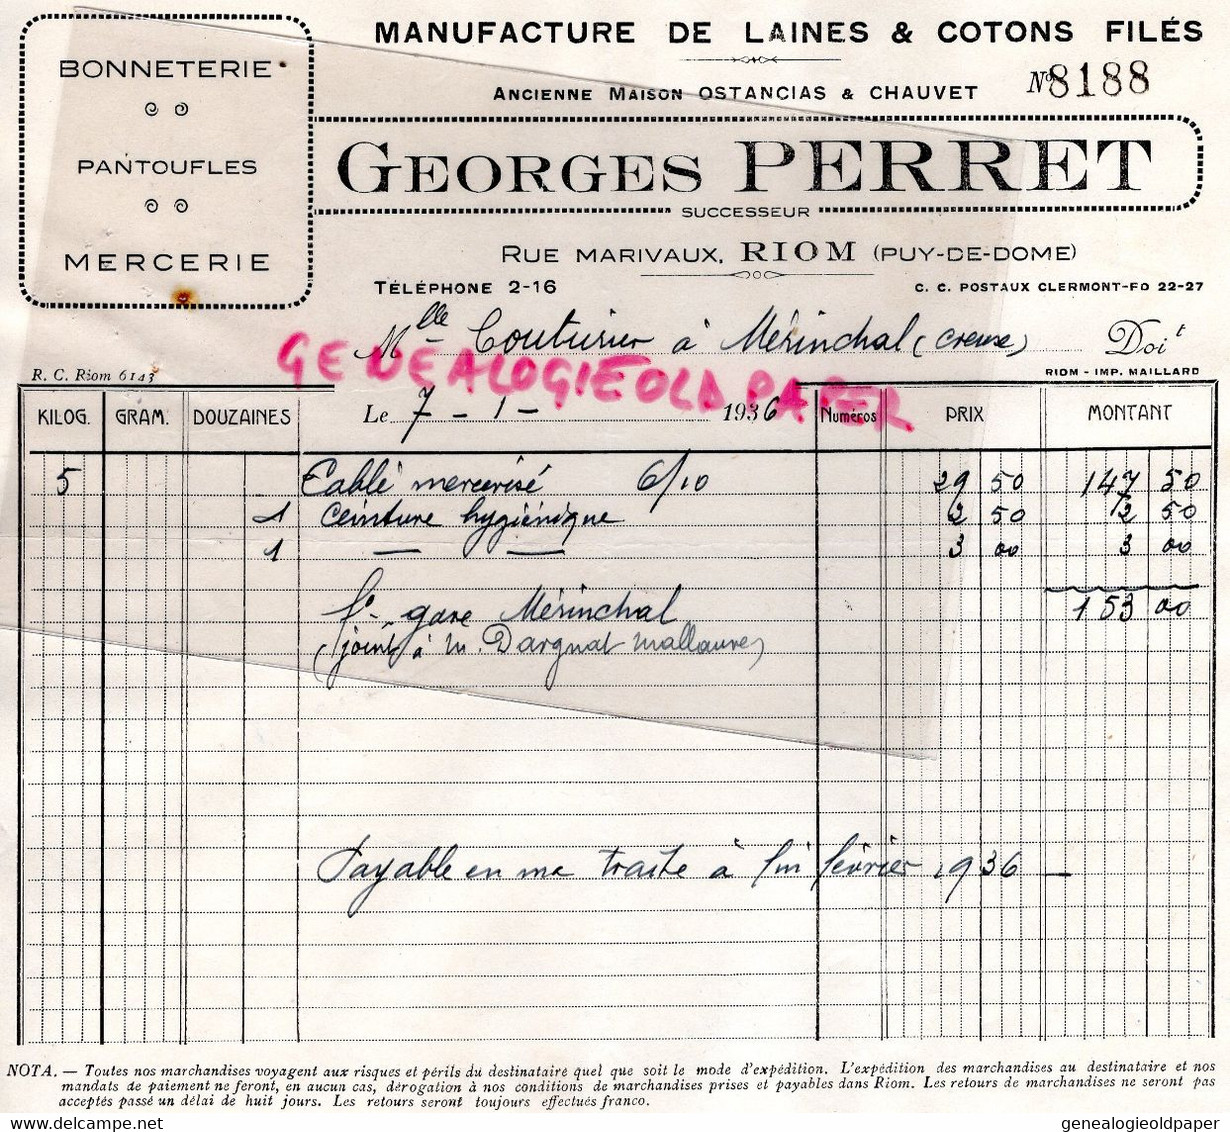 63- RIOM- RARE FACTURE GEORGES PERRET-OSTANCIAS CHAUVET- MANUFACTURE LAINES COTONS-BONNETERIE- RUE MARIVAUX-1936 - Textile & Clothing